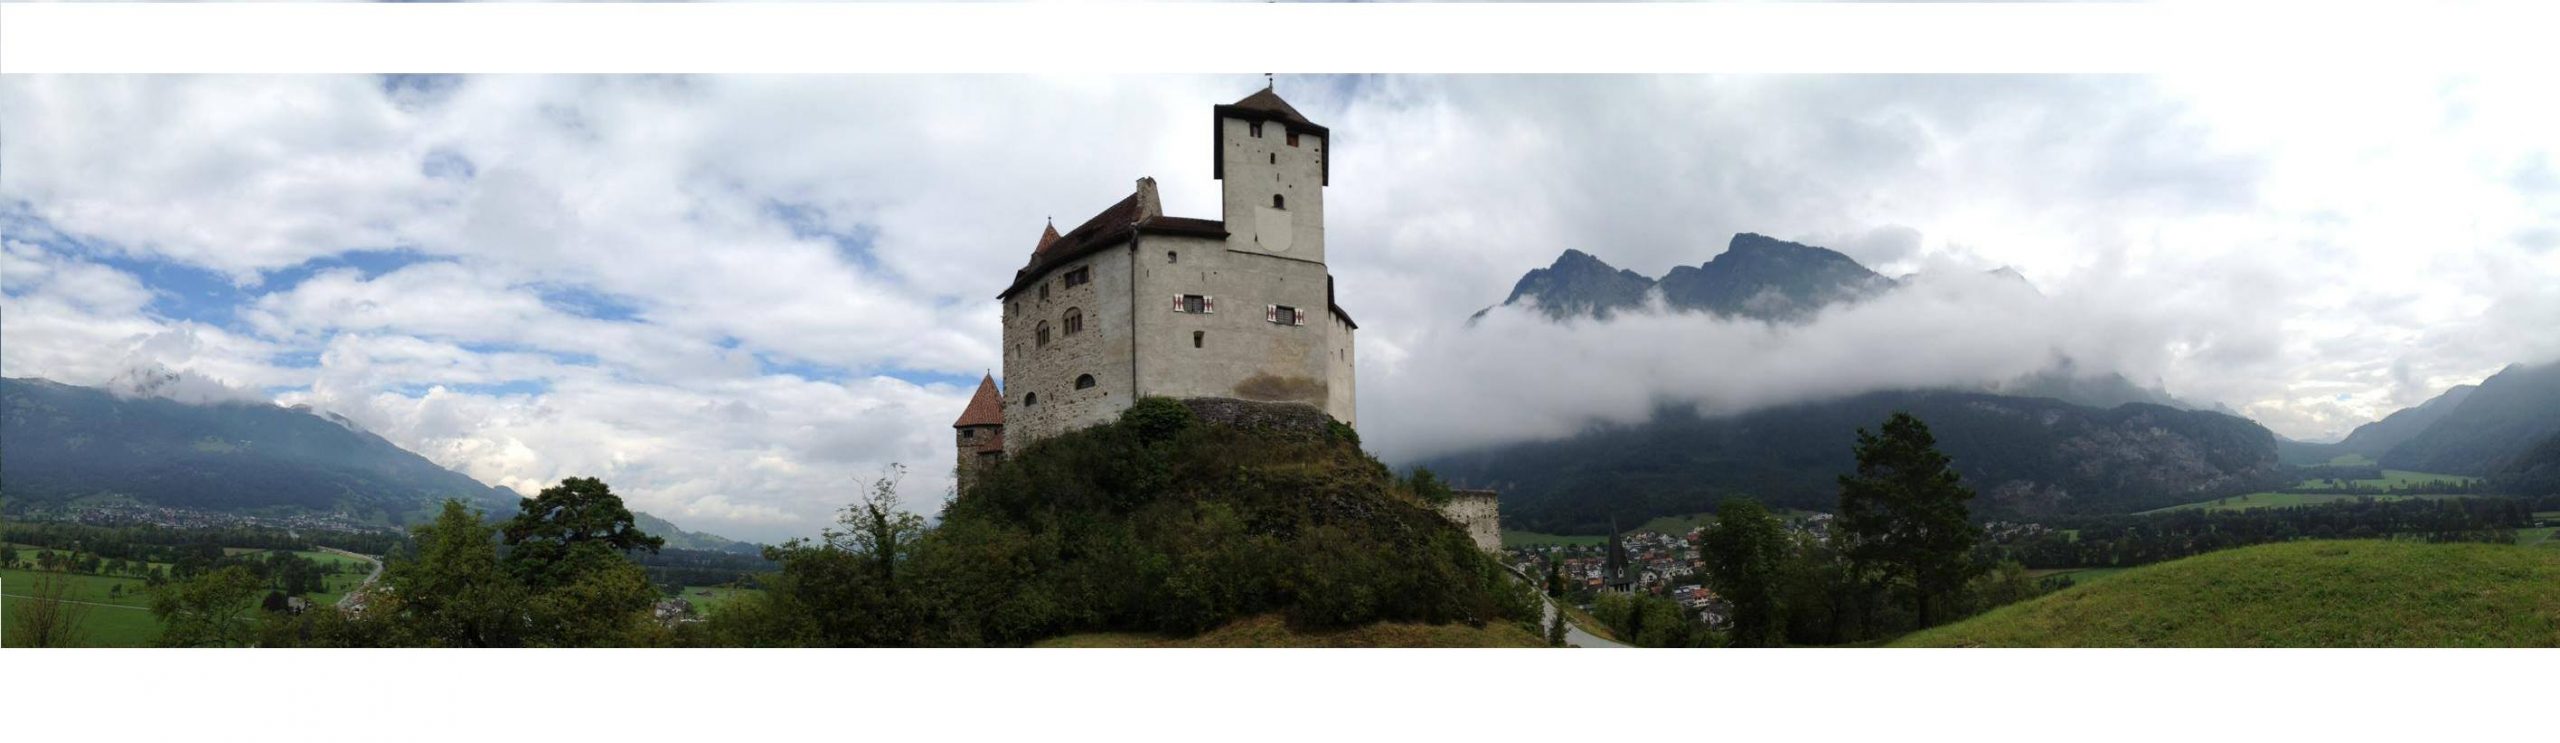 Castle Gutenberg, Balzers Lichtenstein - 24 Hours in Lichtenstein